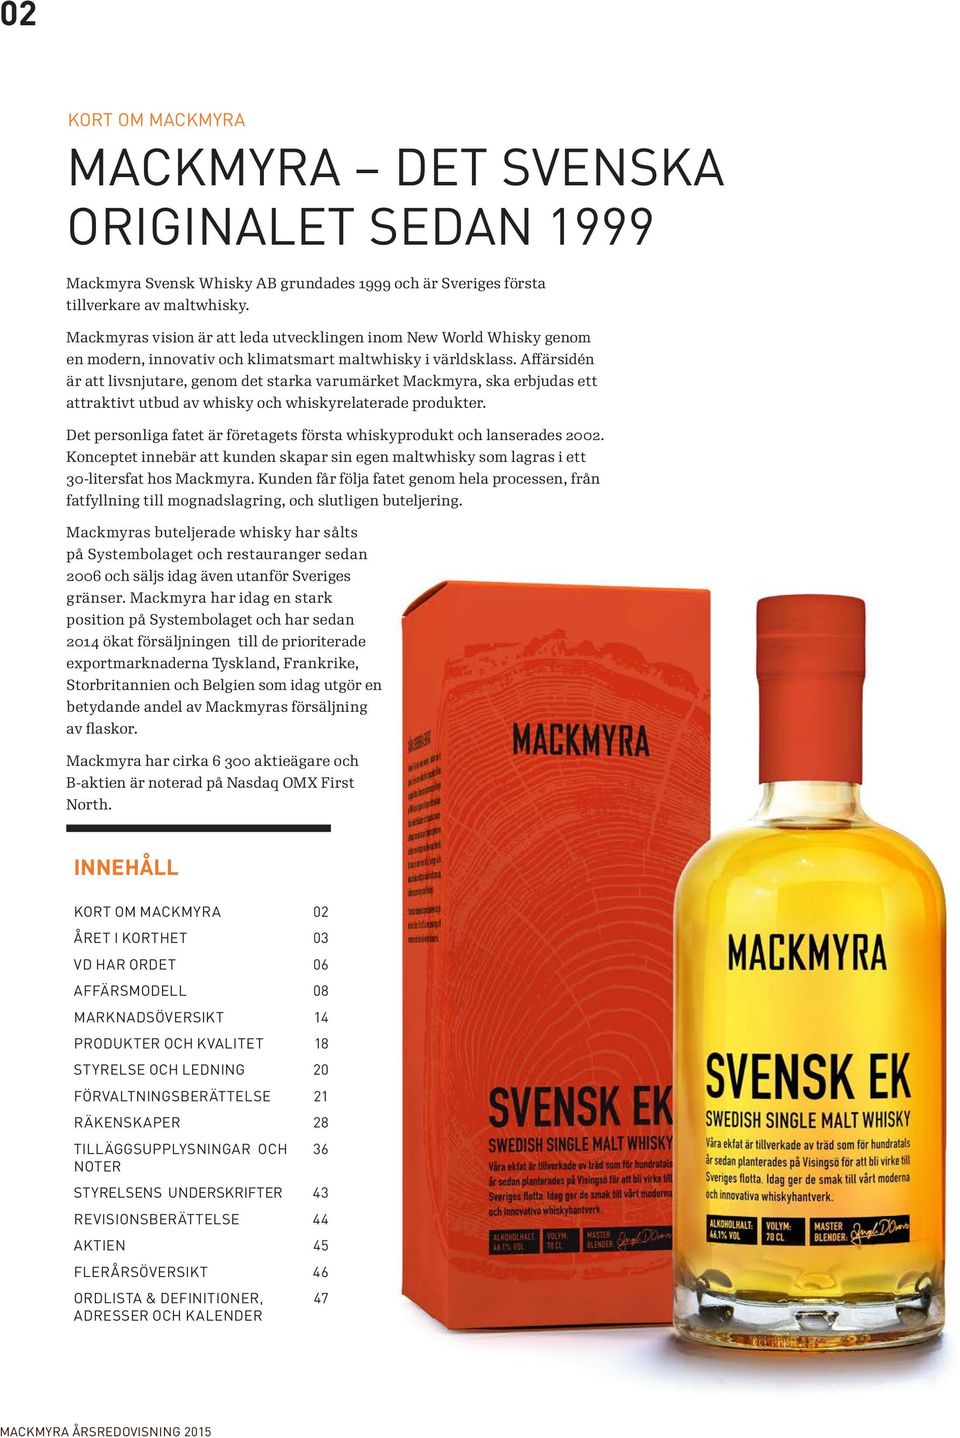 Affärsidén är att livsnjutare, genom det starka varumärket Mackmyra, ska erbjudas ett attraktivt utbud av whisky och whiskyrelaterade produkter.